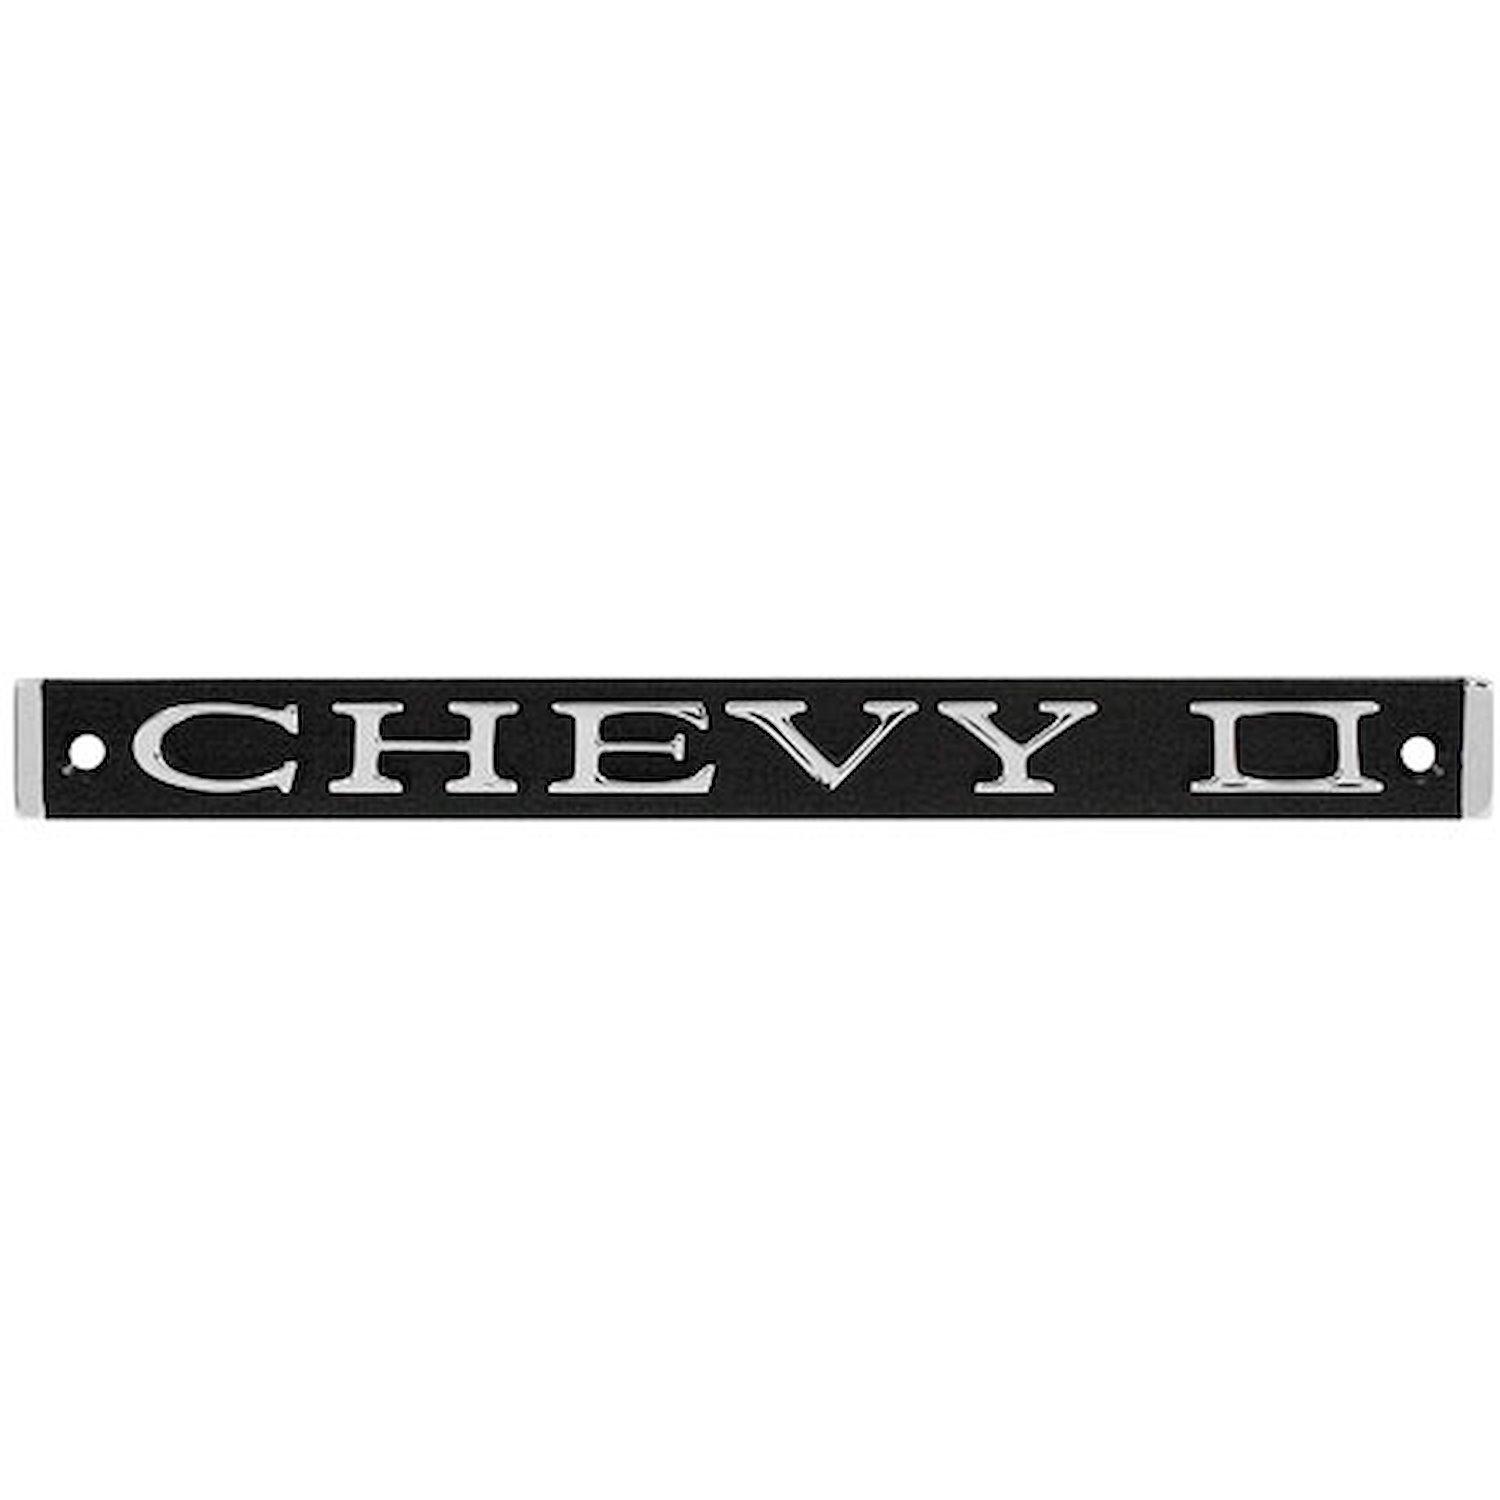 Grille Emblem 1967 Chevy Nova